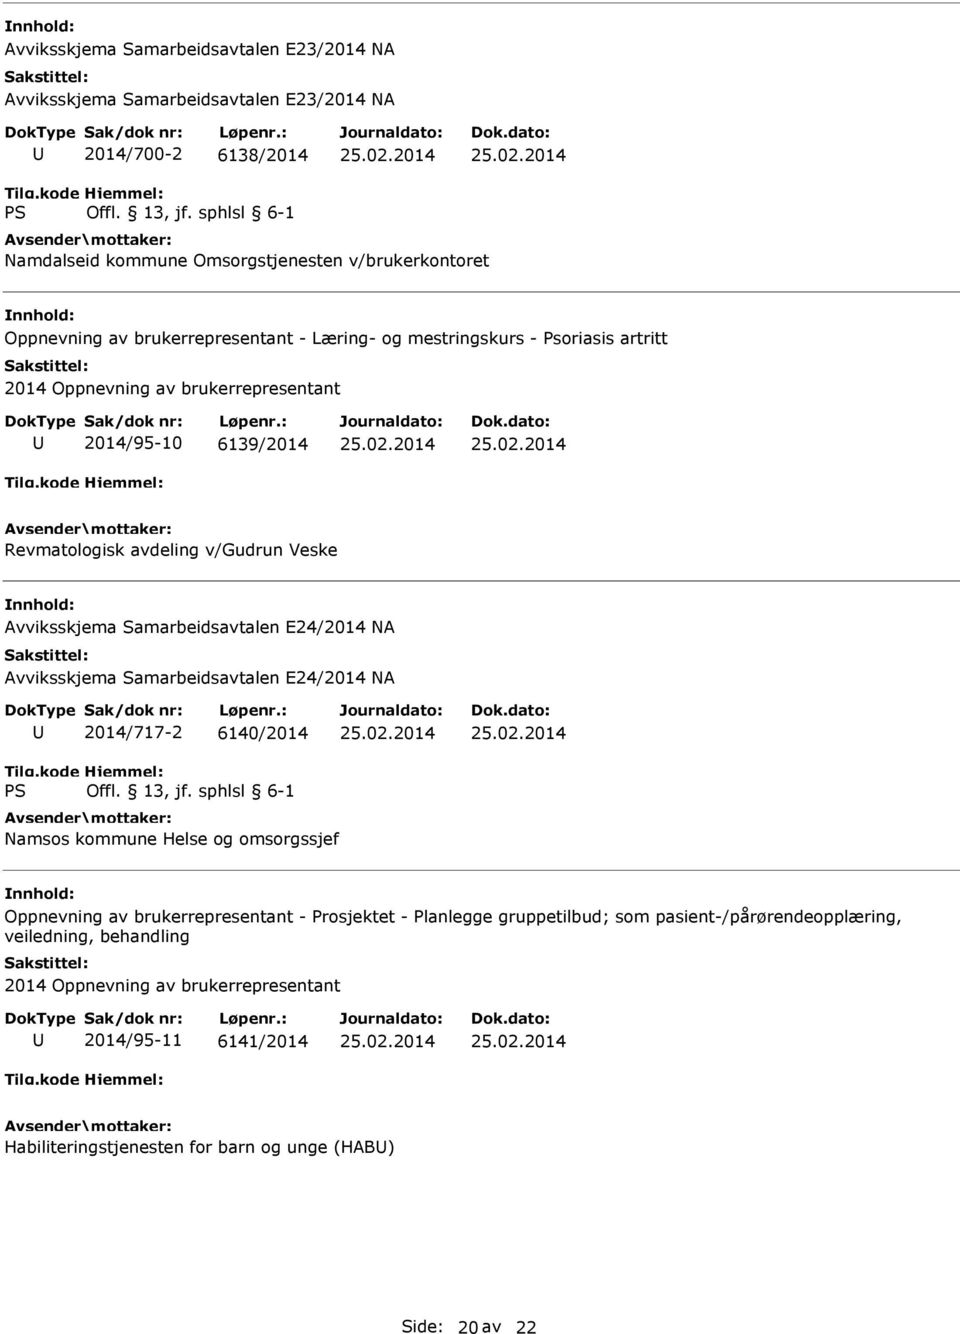 Samarbeidsavtalen E24/2014 NA Avviksskjema Samarbeidsavtalen E24/2014 NA 2014/717-2 6140/2014 Namsos kommune Helse og omsorgssjef Oppnevning av brukerrepresentant - Prosjektet -